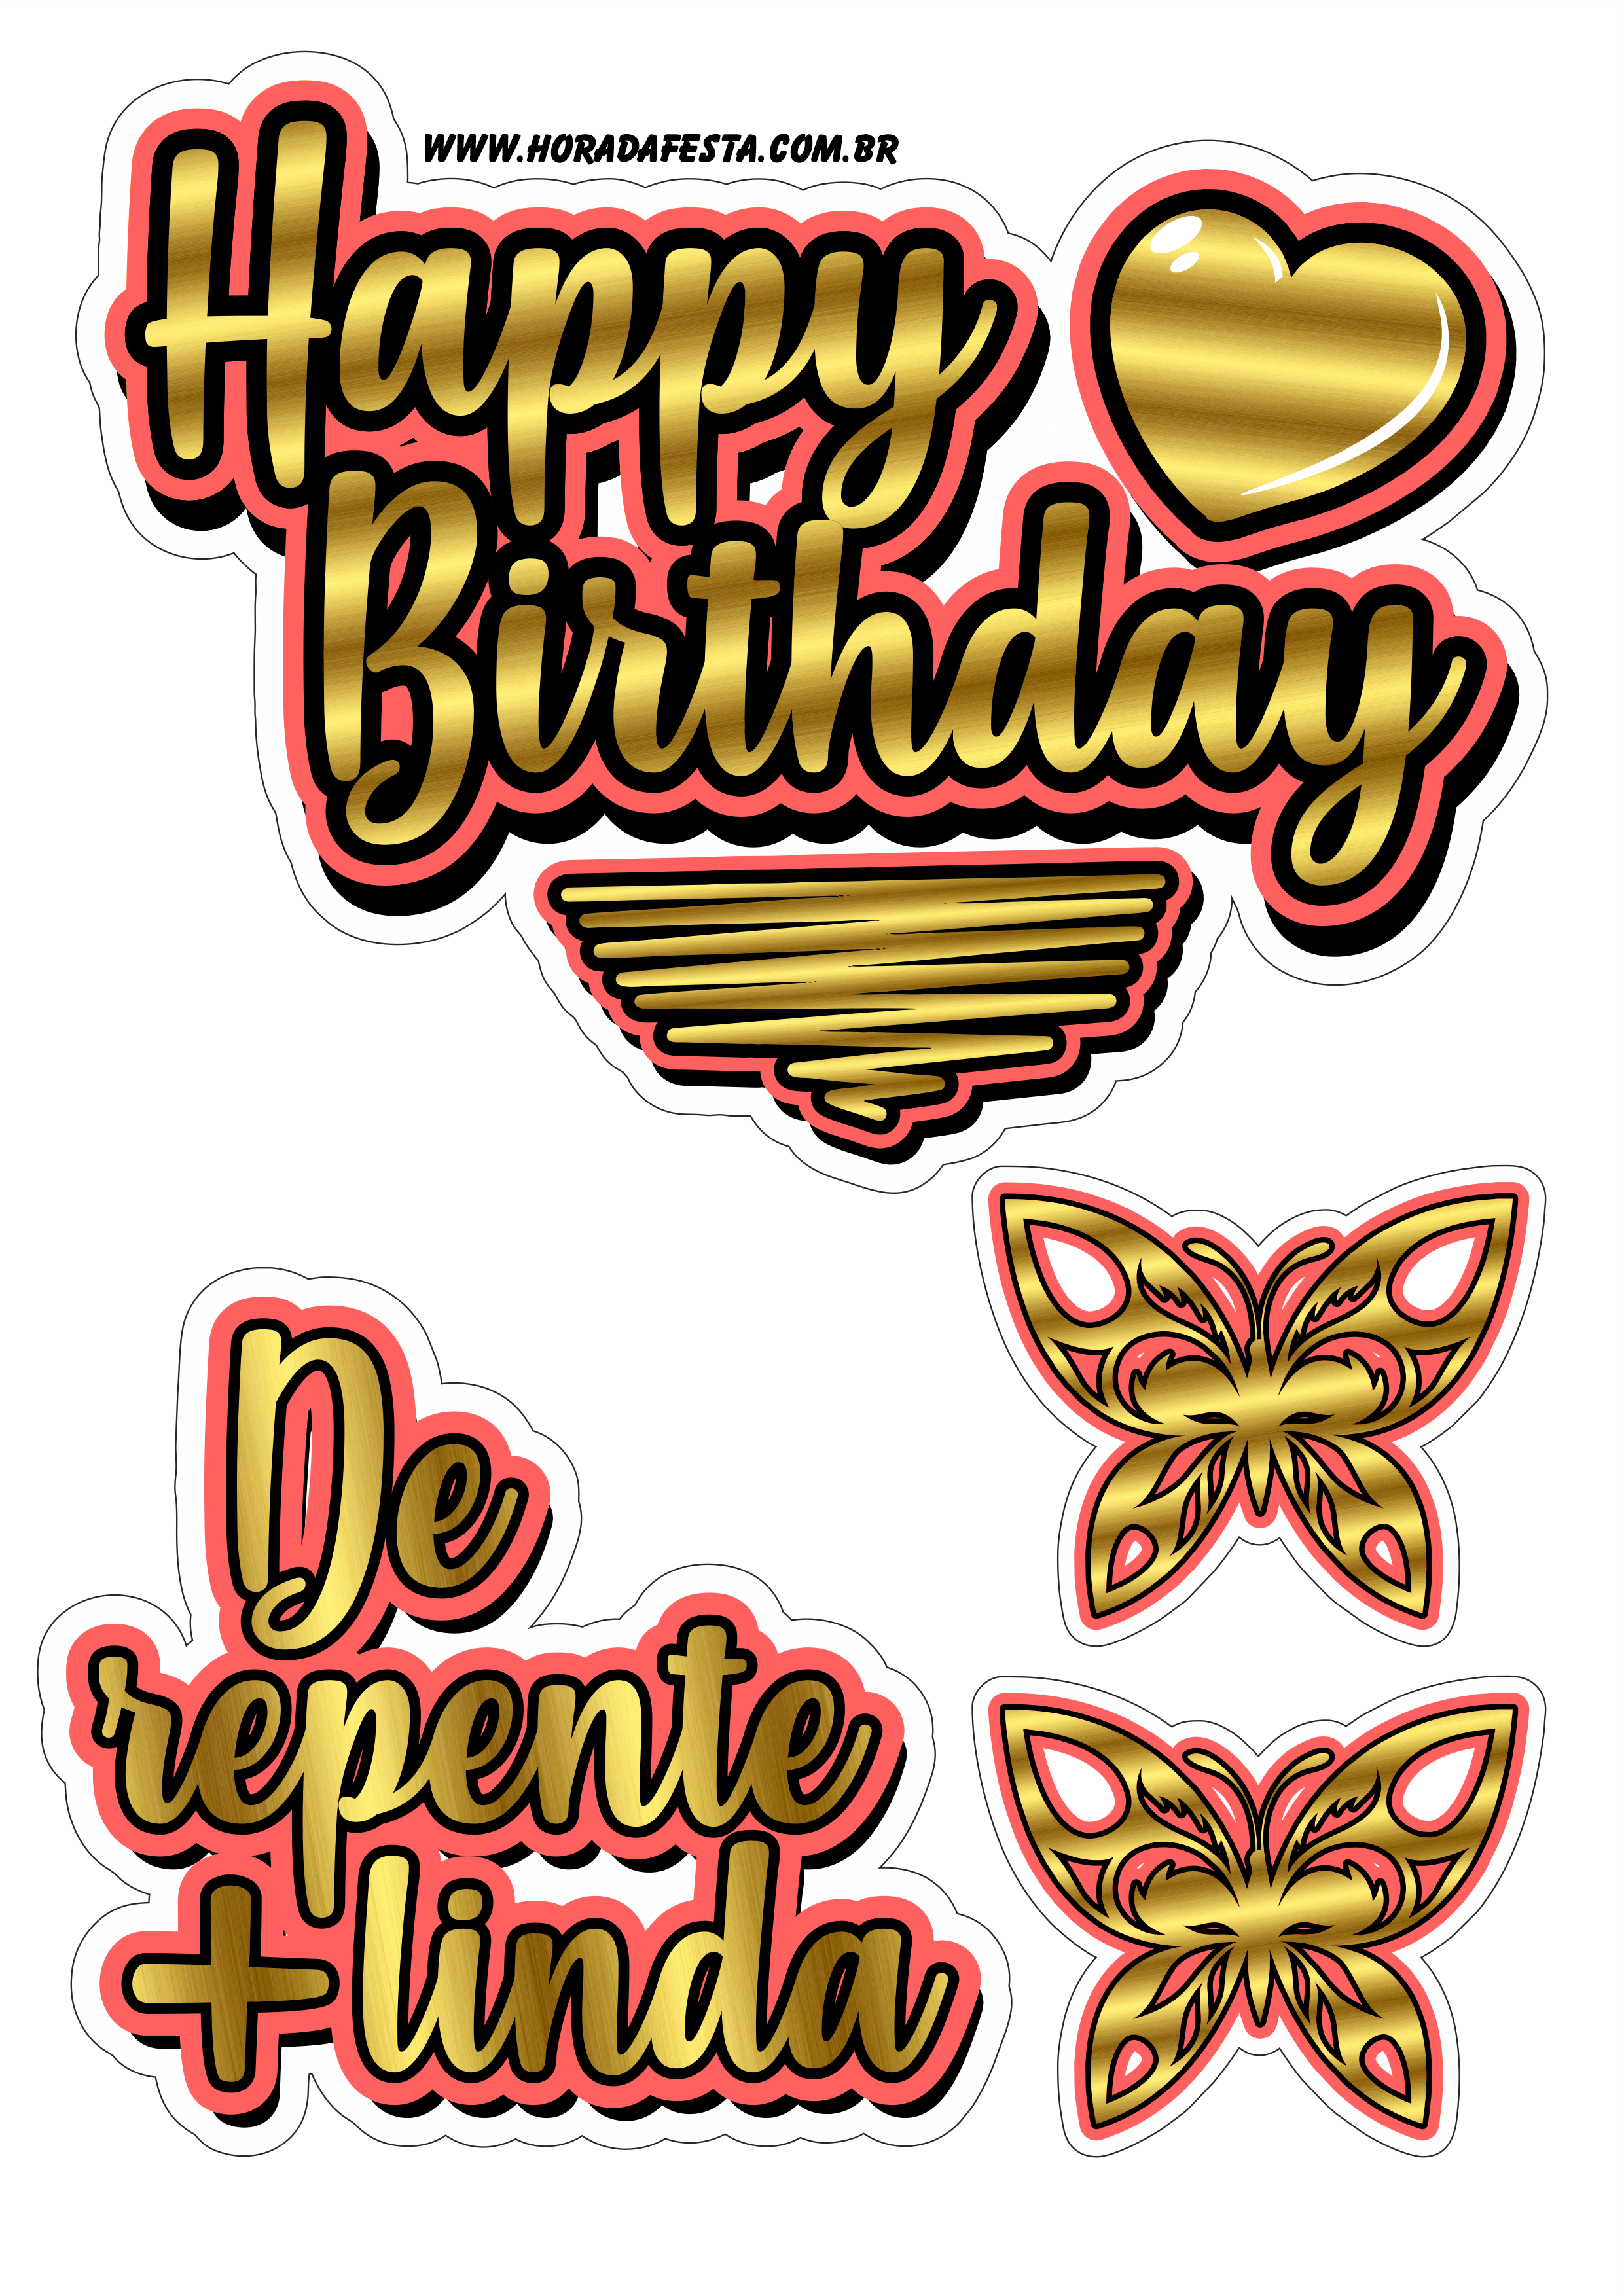 Happy Birthday dourado com vermelho topo de bolo de repente mais linda png